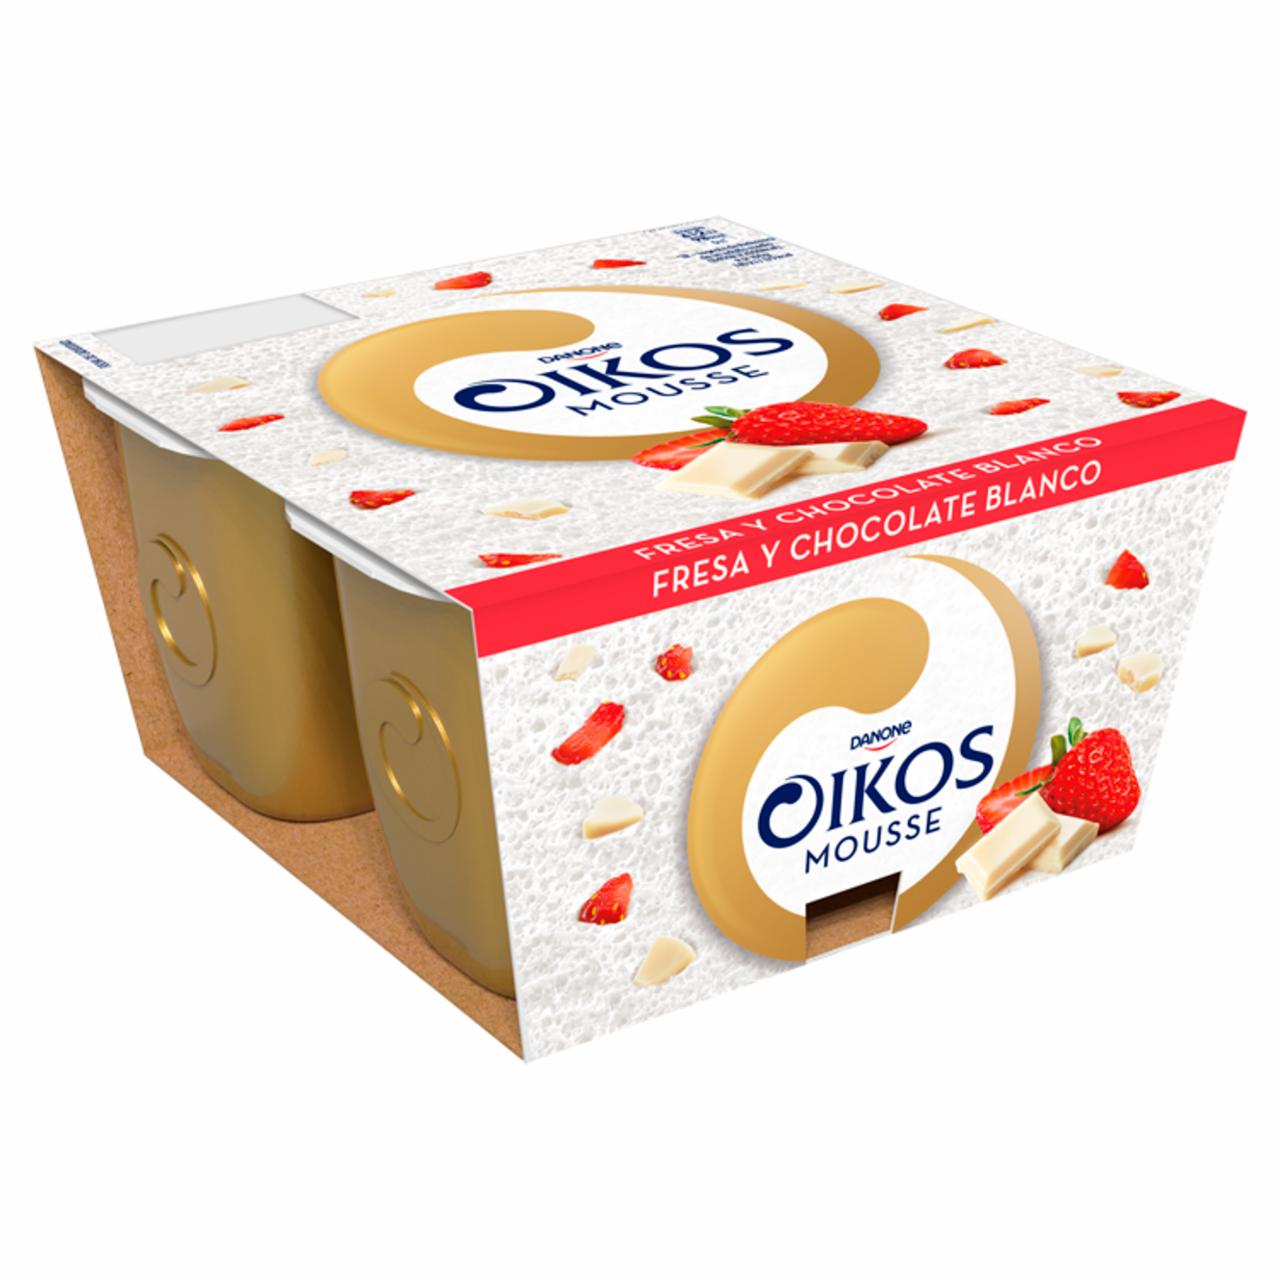 Képek - Oikos Mousse Fresa Y Chocolate Blanco tejhab eper és fehércsokoládé darabokkal 4 x 55 g (220 g)